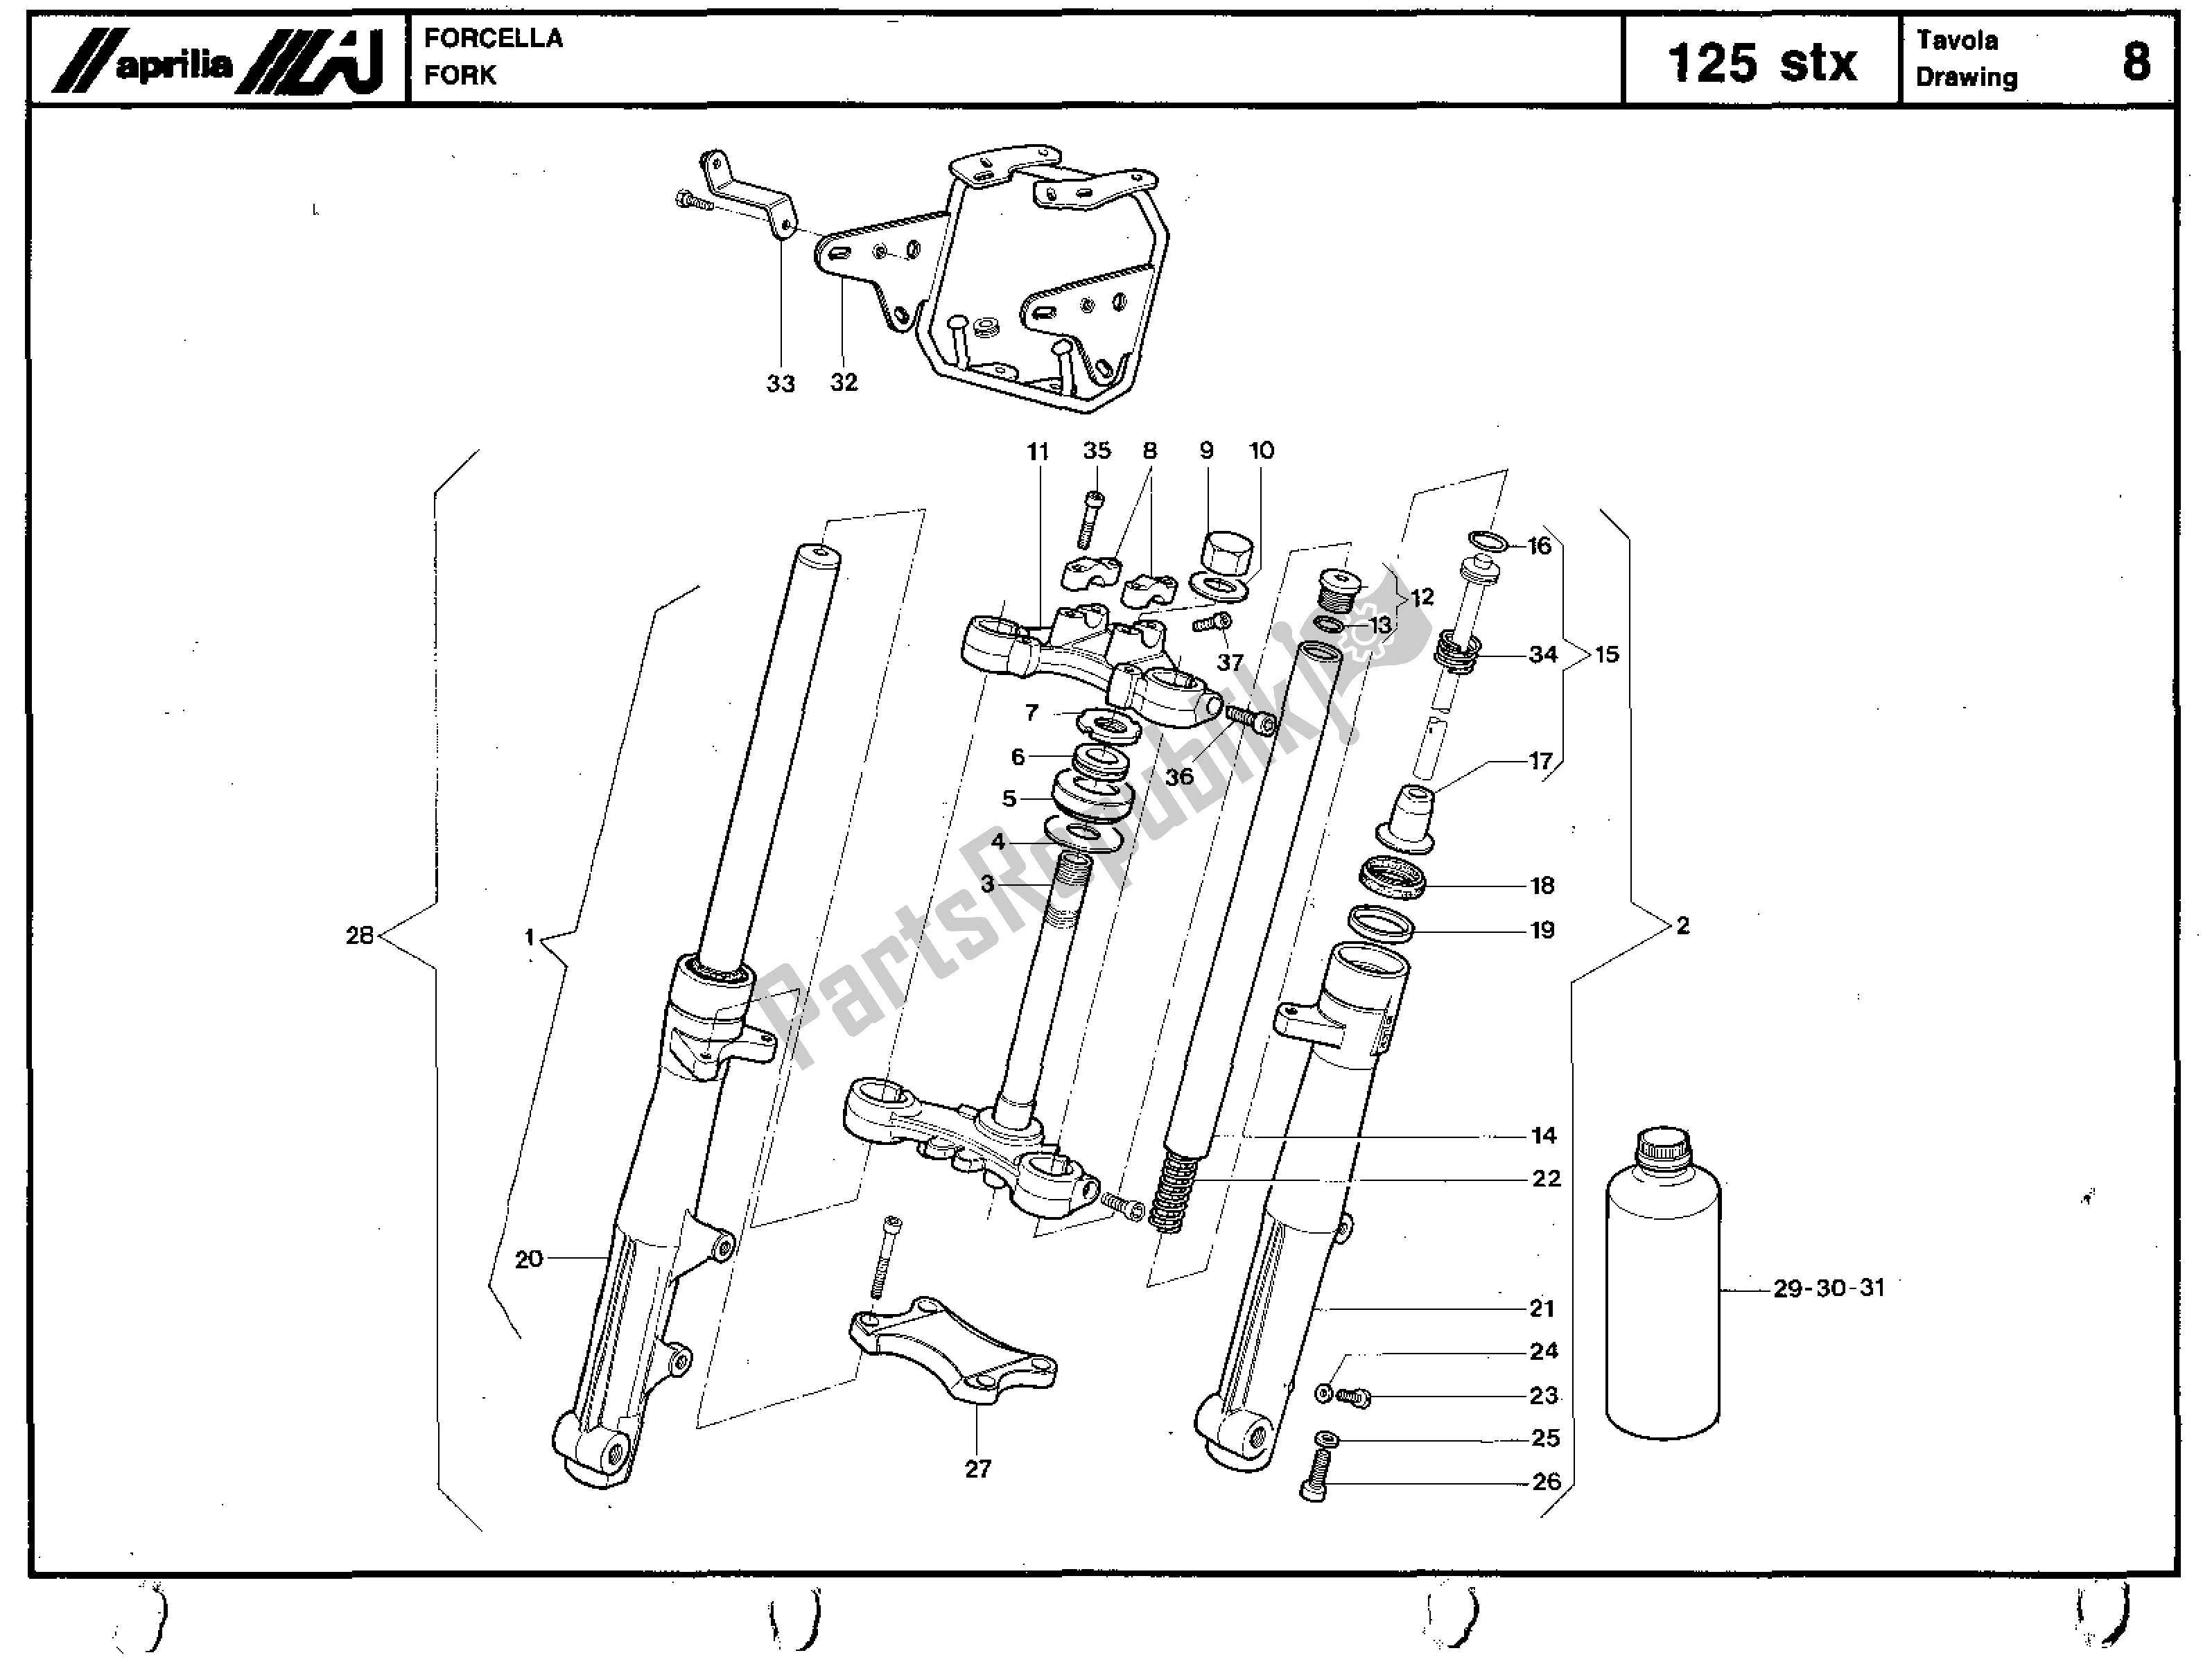 Alle onderdelen voor de Fork van de Aprilia STX 125 1984 - 1986